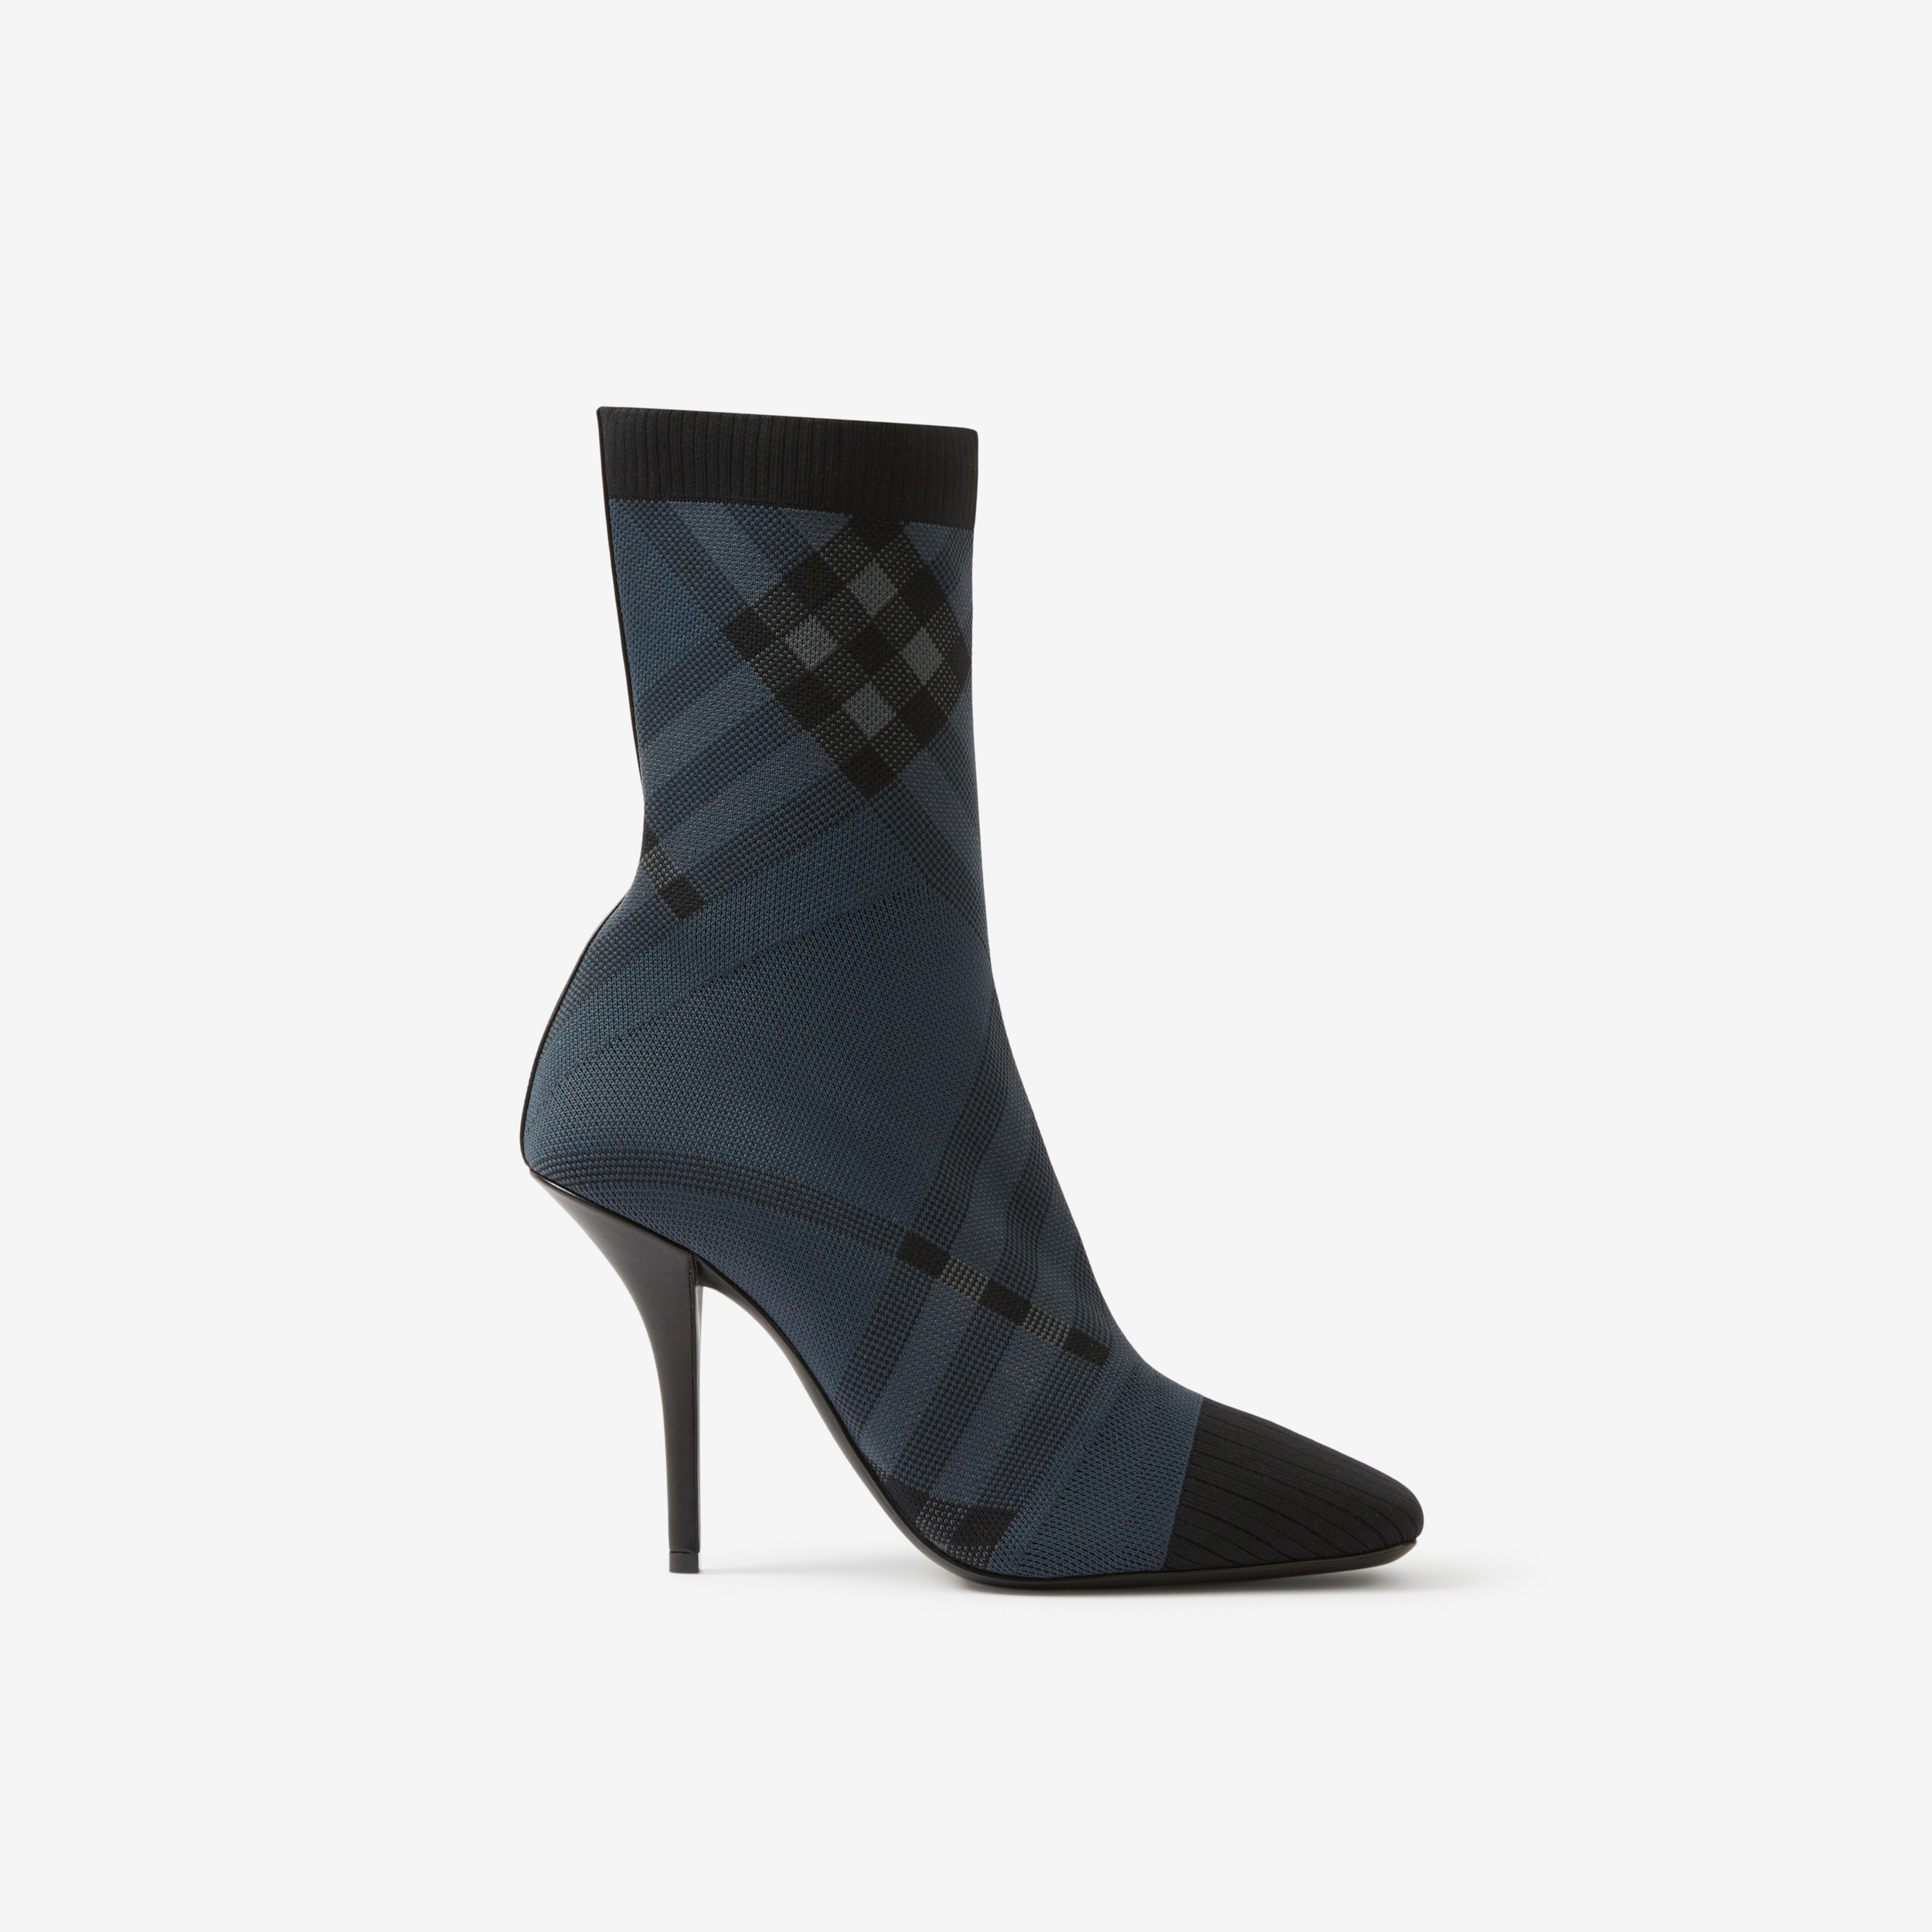 Gestrickte Socken-Stiefeletten in Check (Anthrazitgrau/grau) - Damen | Burberry® - 1